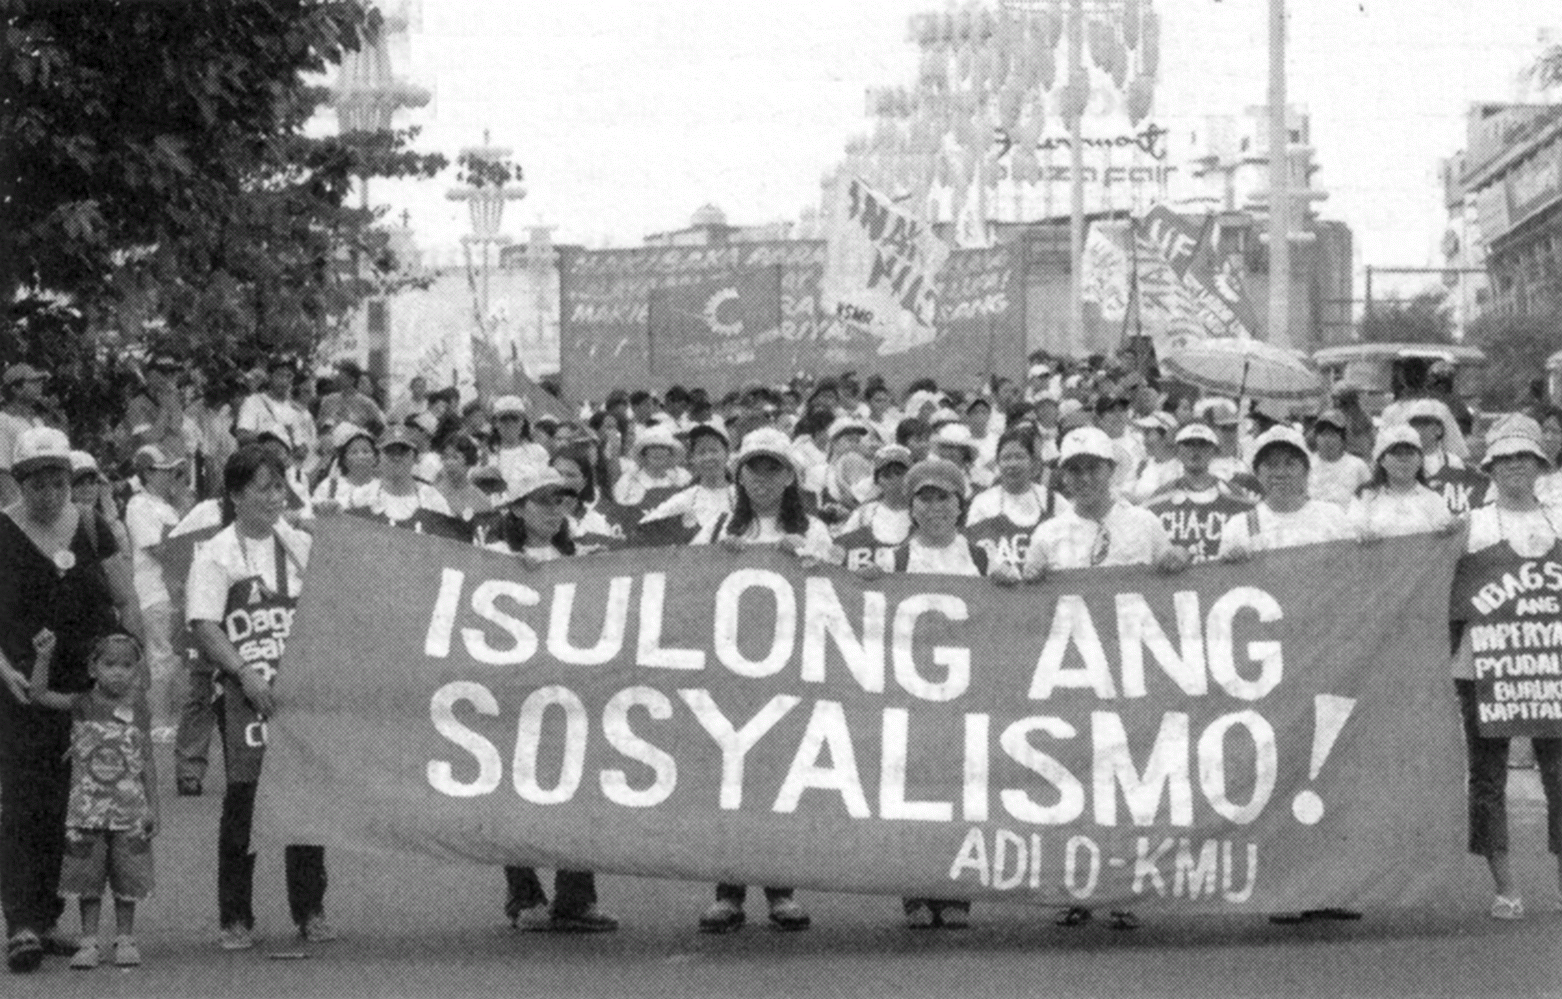 54 Burjuva ekonomi-politiðinin iflasý Sosyalizme Ýleri! Mayýs 2009, Manila, Filipinler liþir. Saðcý sendika yönetim i açýk bir sýnýf ihaneti ve sosyal-þovenizm çizgisini savunuyor.